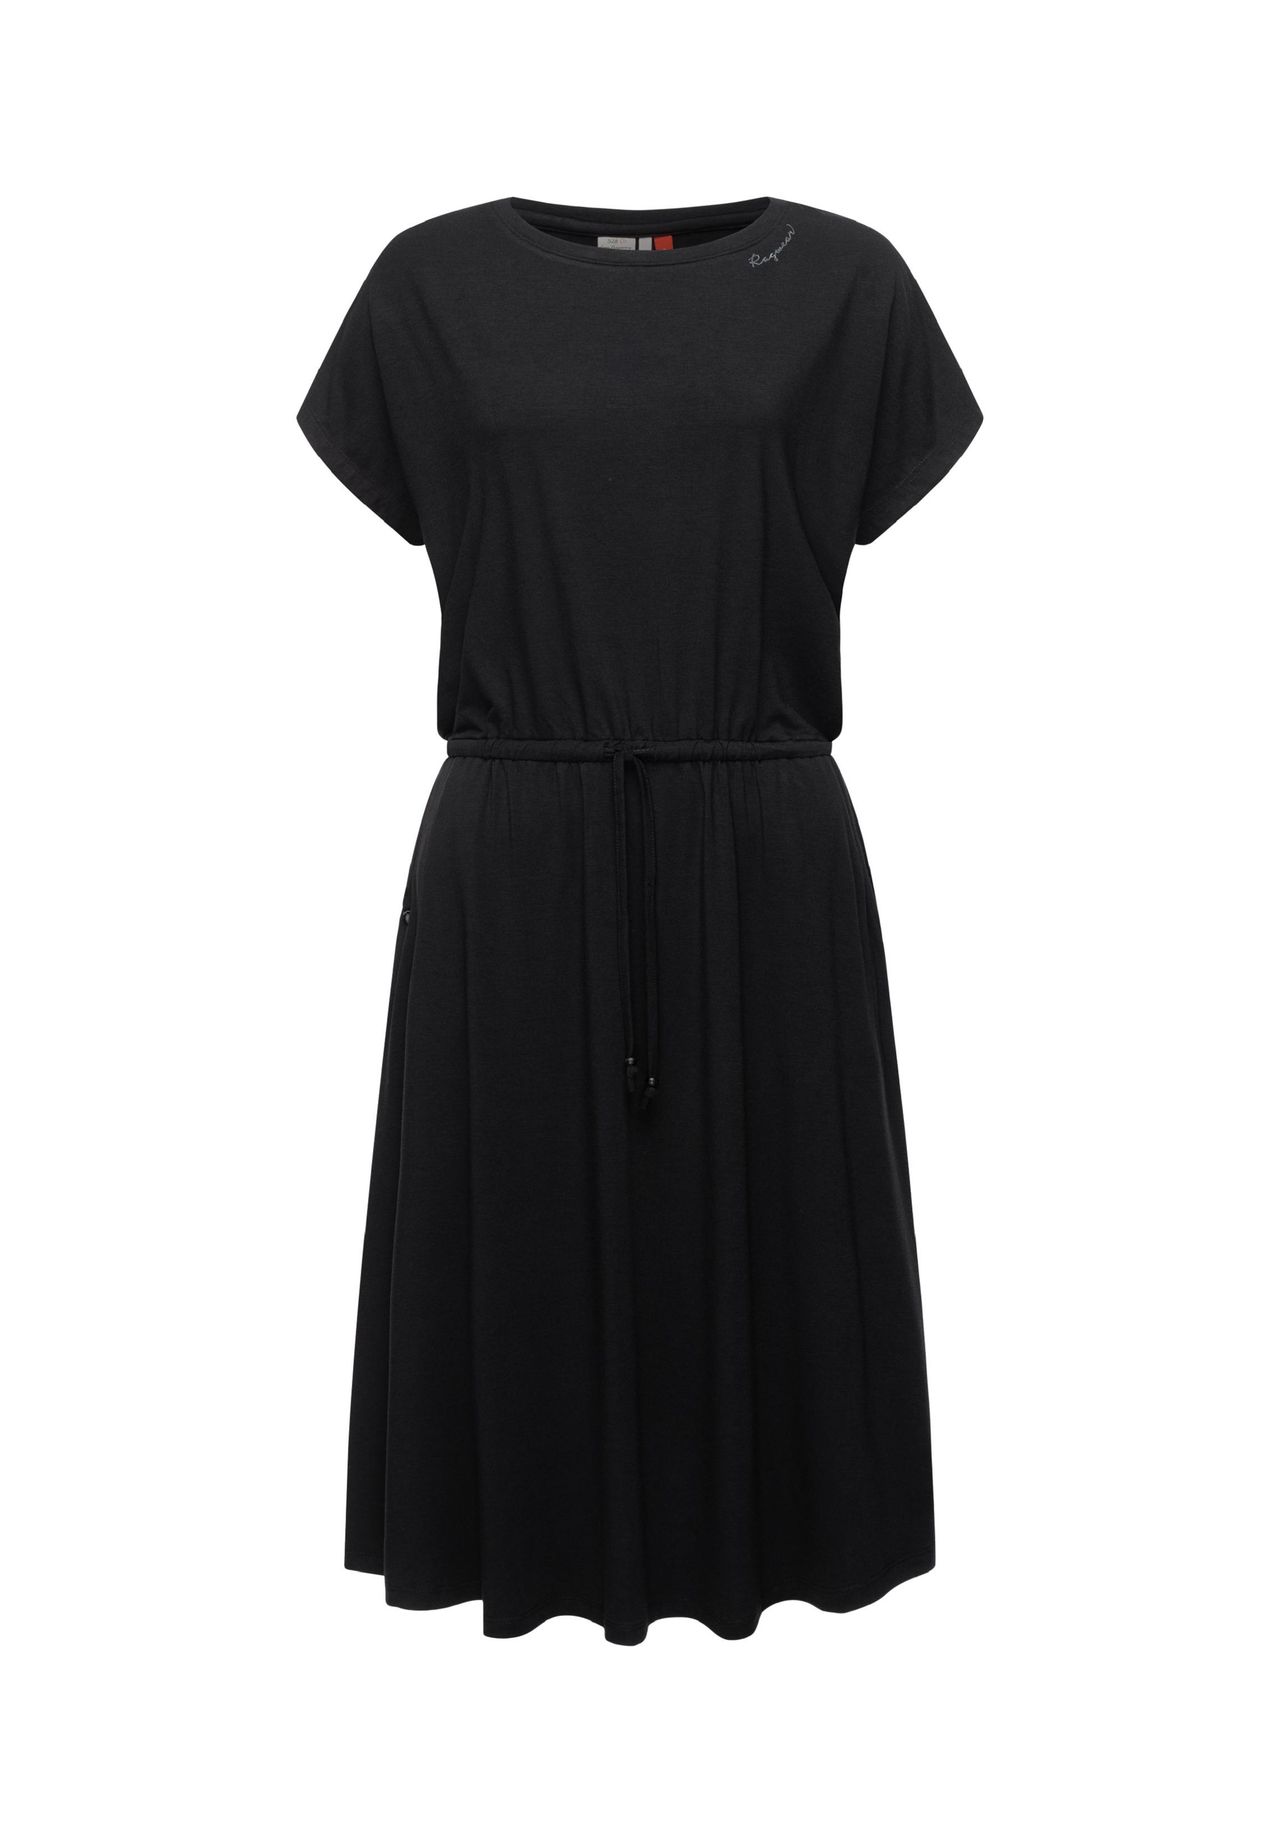 Kleid schwarz | knielang GALERIA kurzarm kaufen